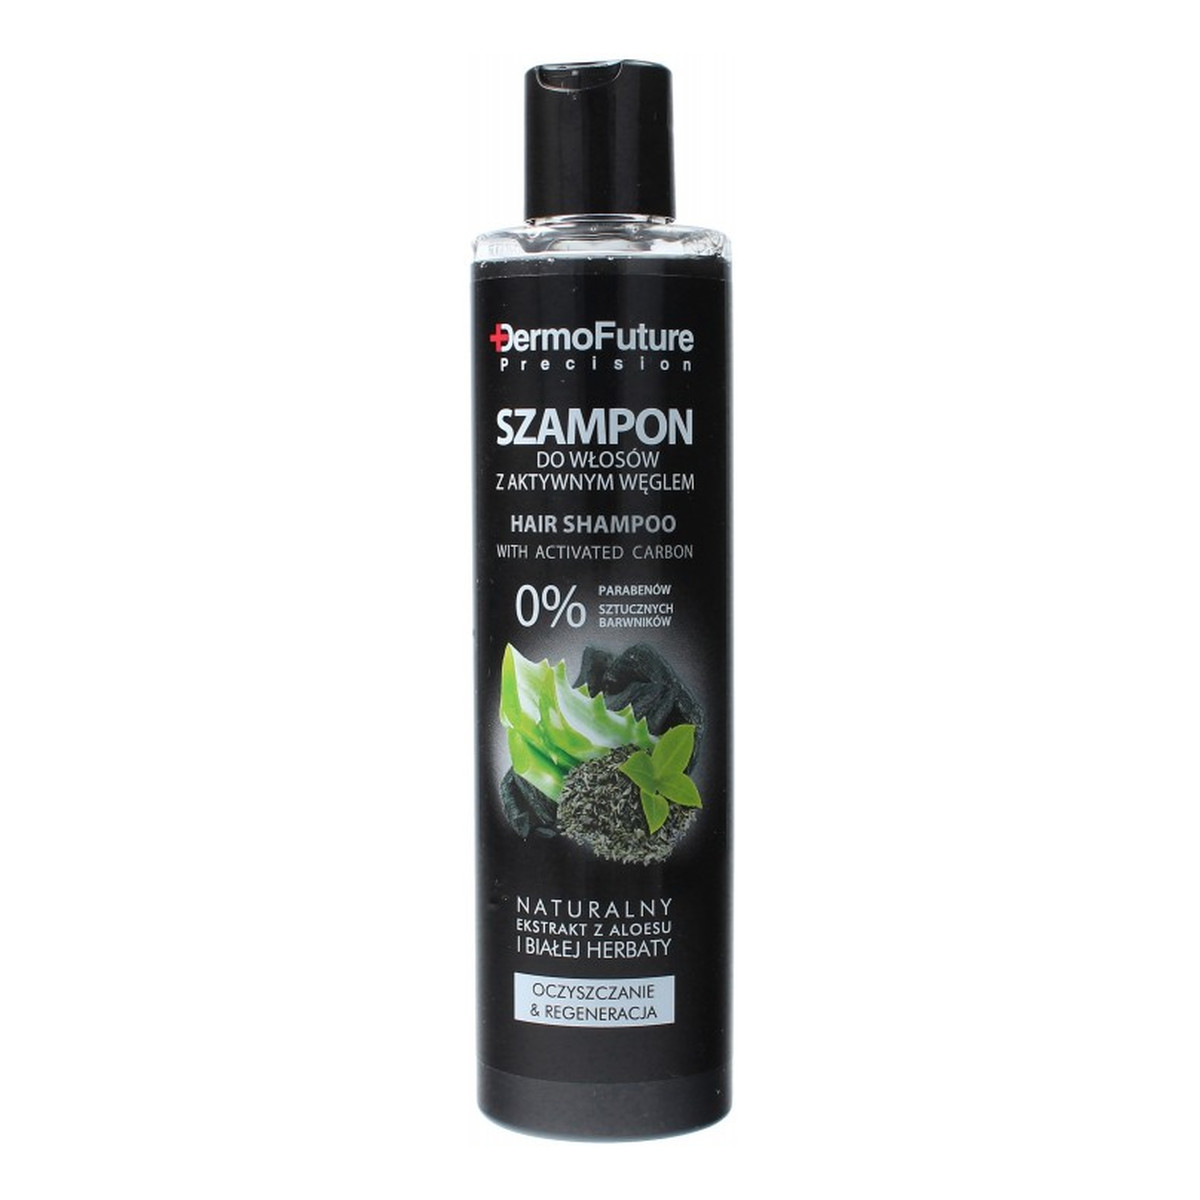 DermoFuture Precision Aktywny Węgiel szampon do wszystkich rodzajów włosów 250ml